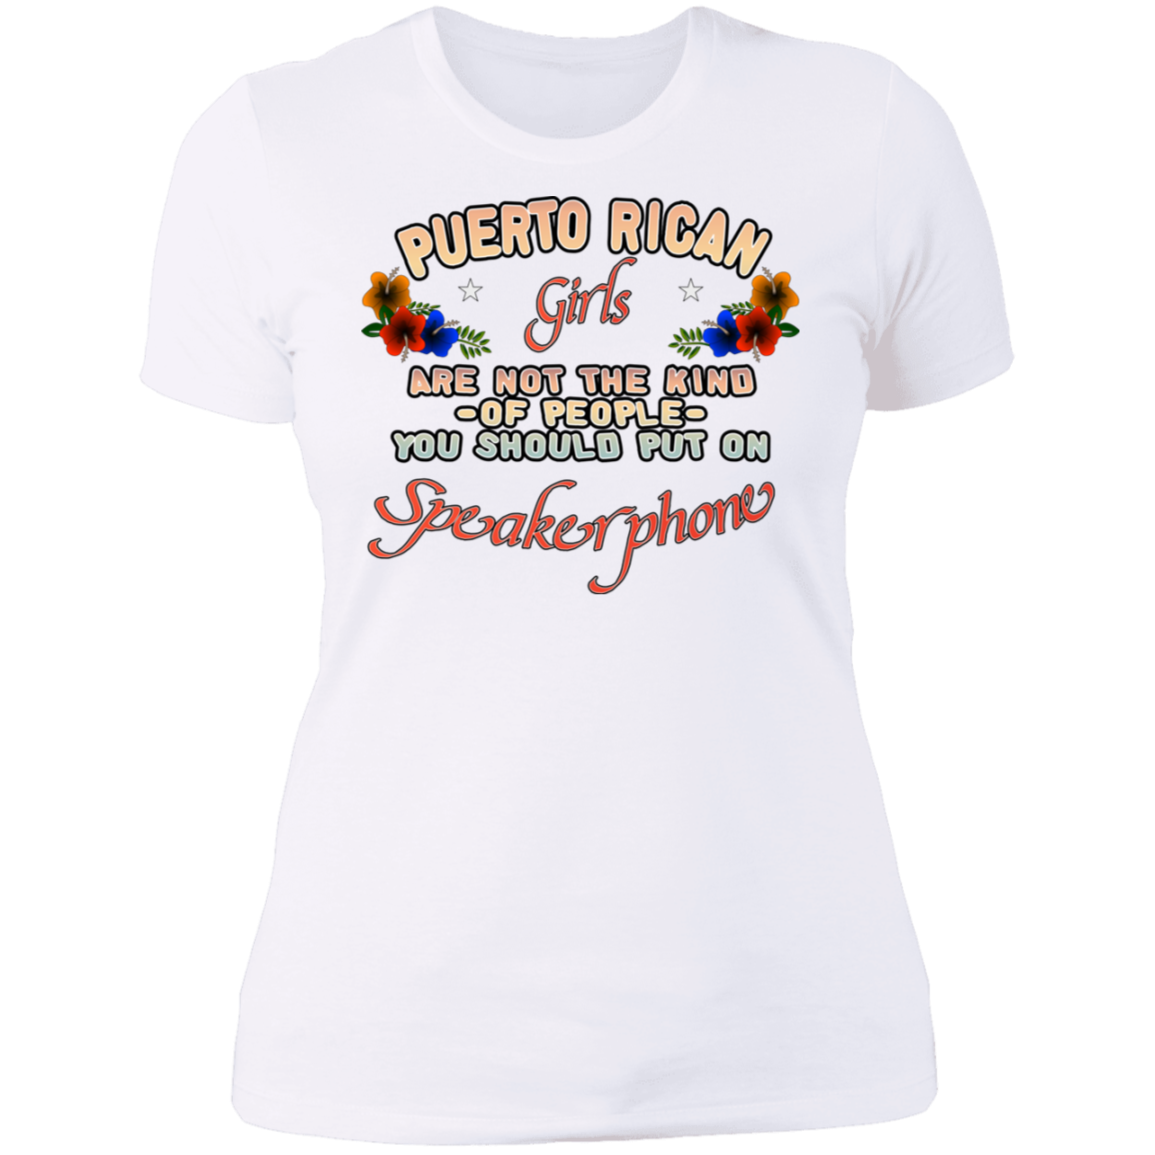 PR Girls Speakerphone Ladies' Boyfriend T-Shirt - Puerto Rican Pride